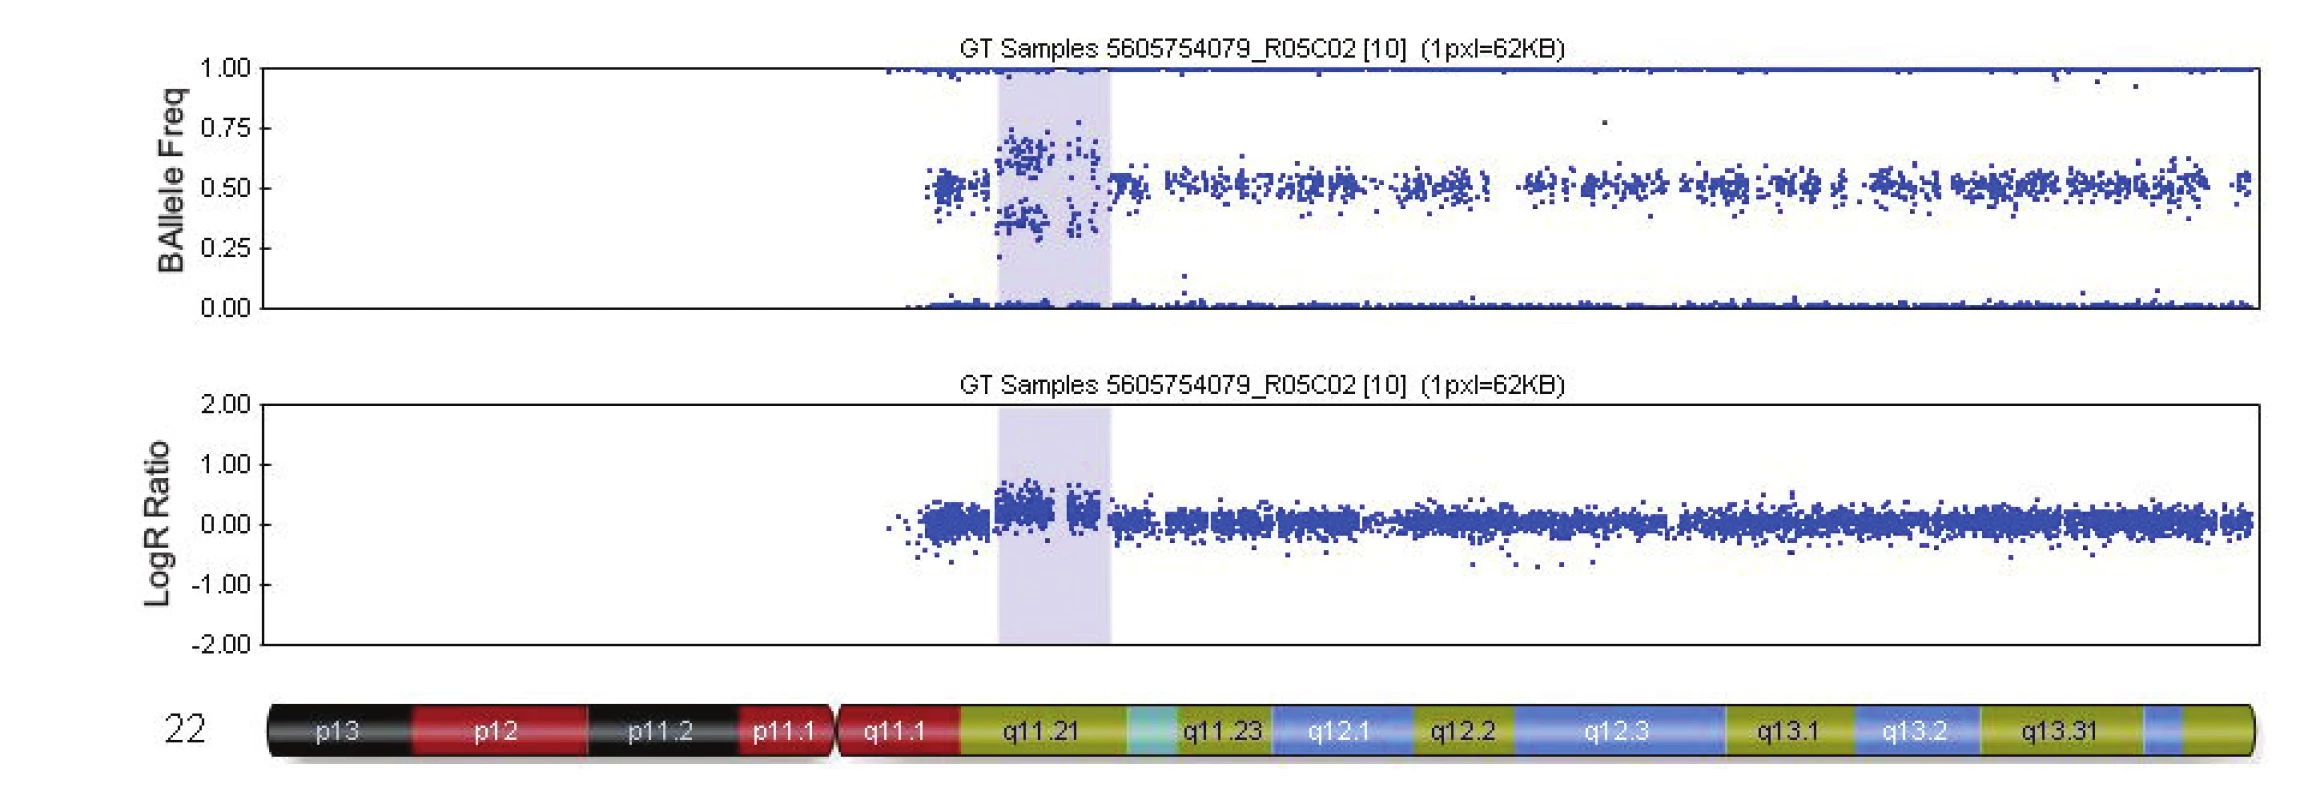 Výsledek vyšetření metodou SNP array - mikroduplikace na chromozomu 22 (případ č. 3, tab. 4). Duplikace 22q11.21 (modrý blok) o velikosti 2.9 Mb u plodu s agenezí corpus callosum. Duplikace překrývá oblast pro tzv.22q11.21 mikroduplikační syndrom.
Zdroj: Illumina GenomeStudioV2010.2 / Chromosome Browser